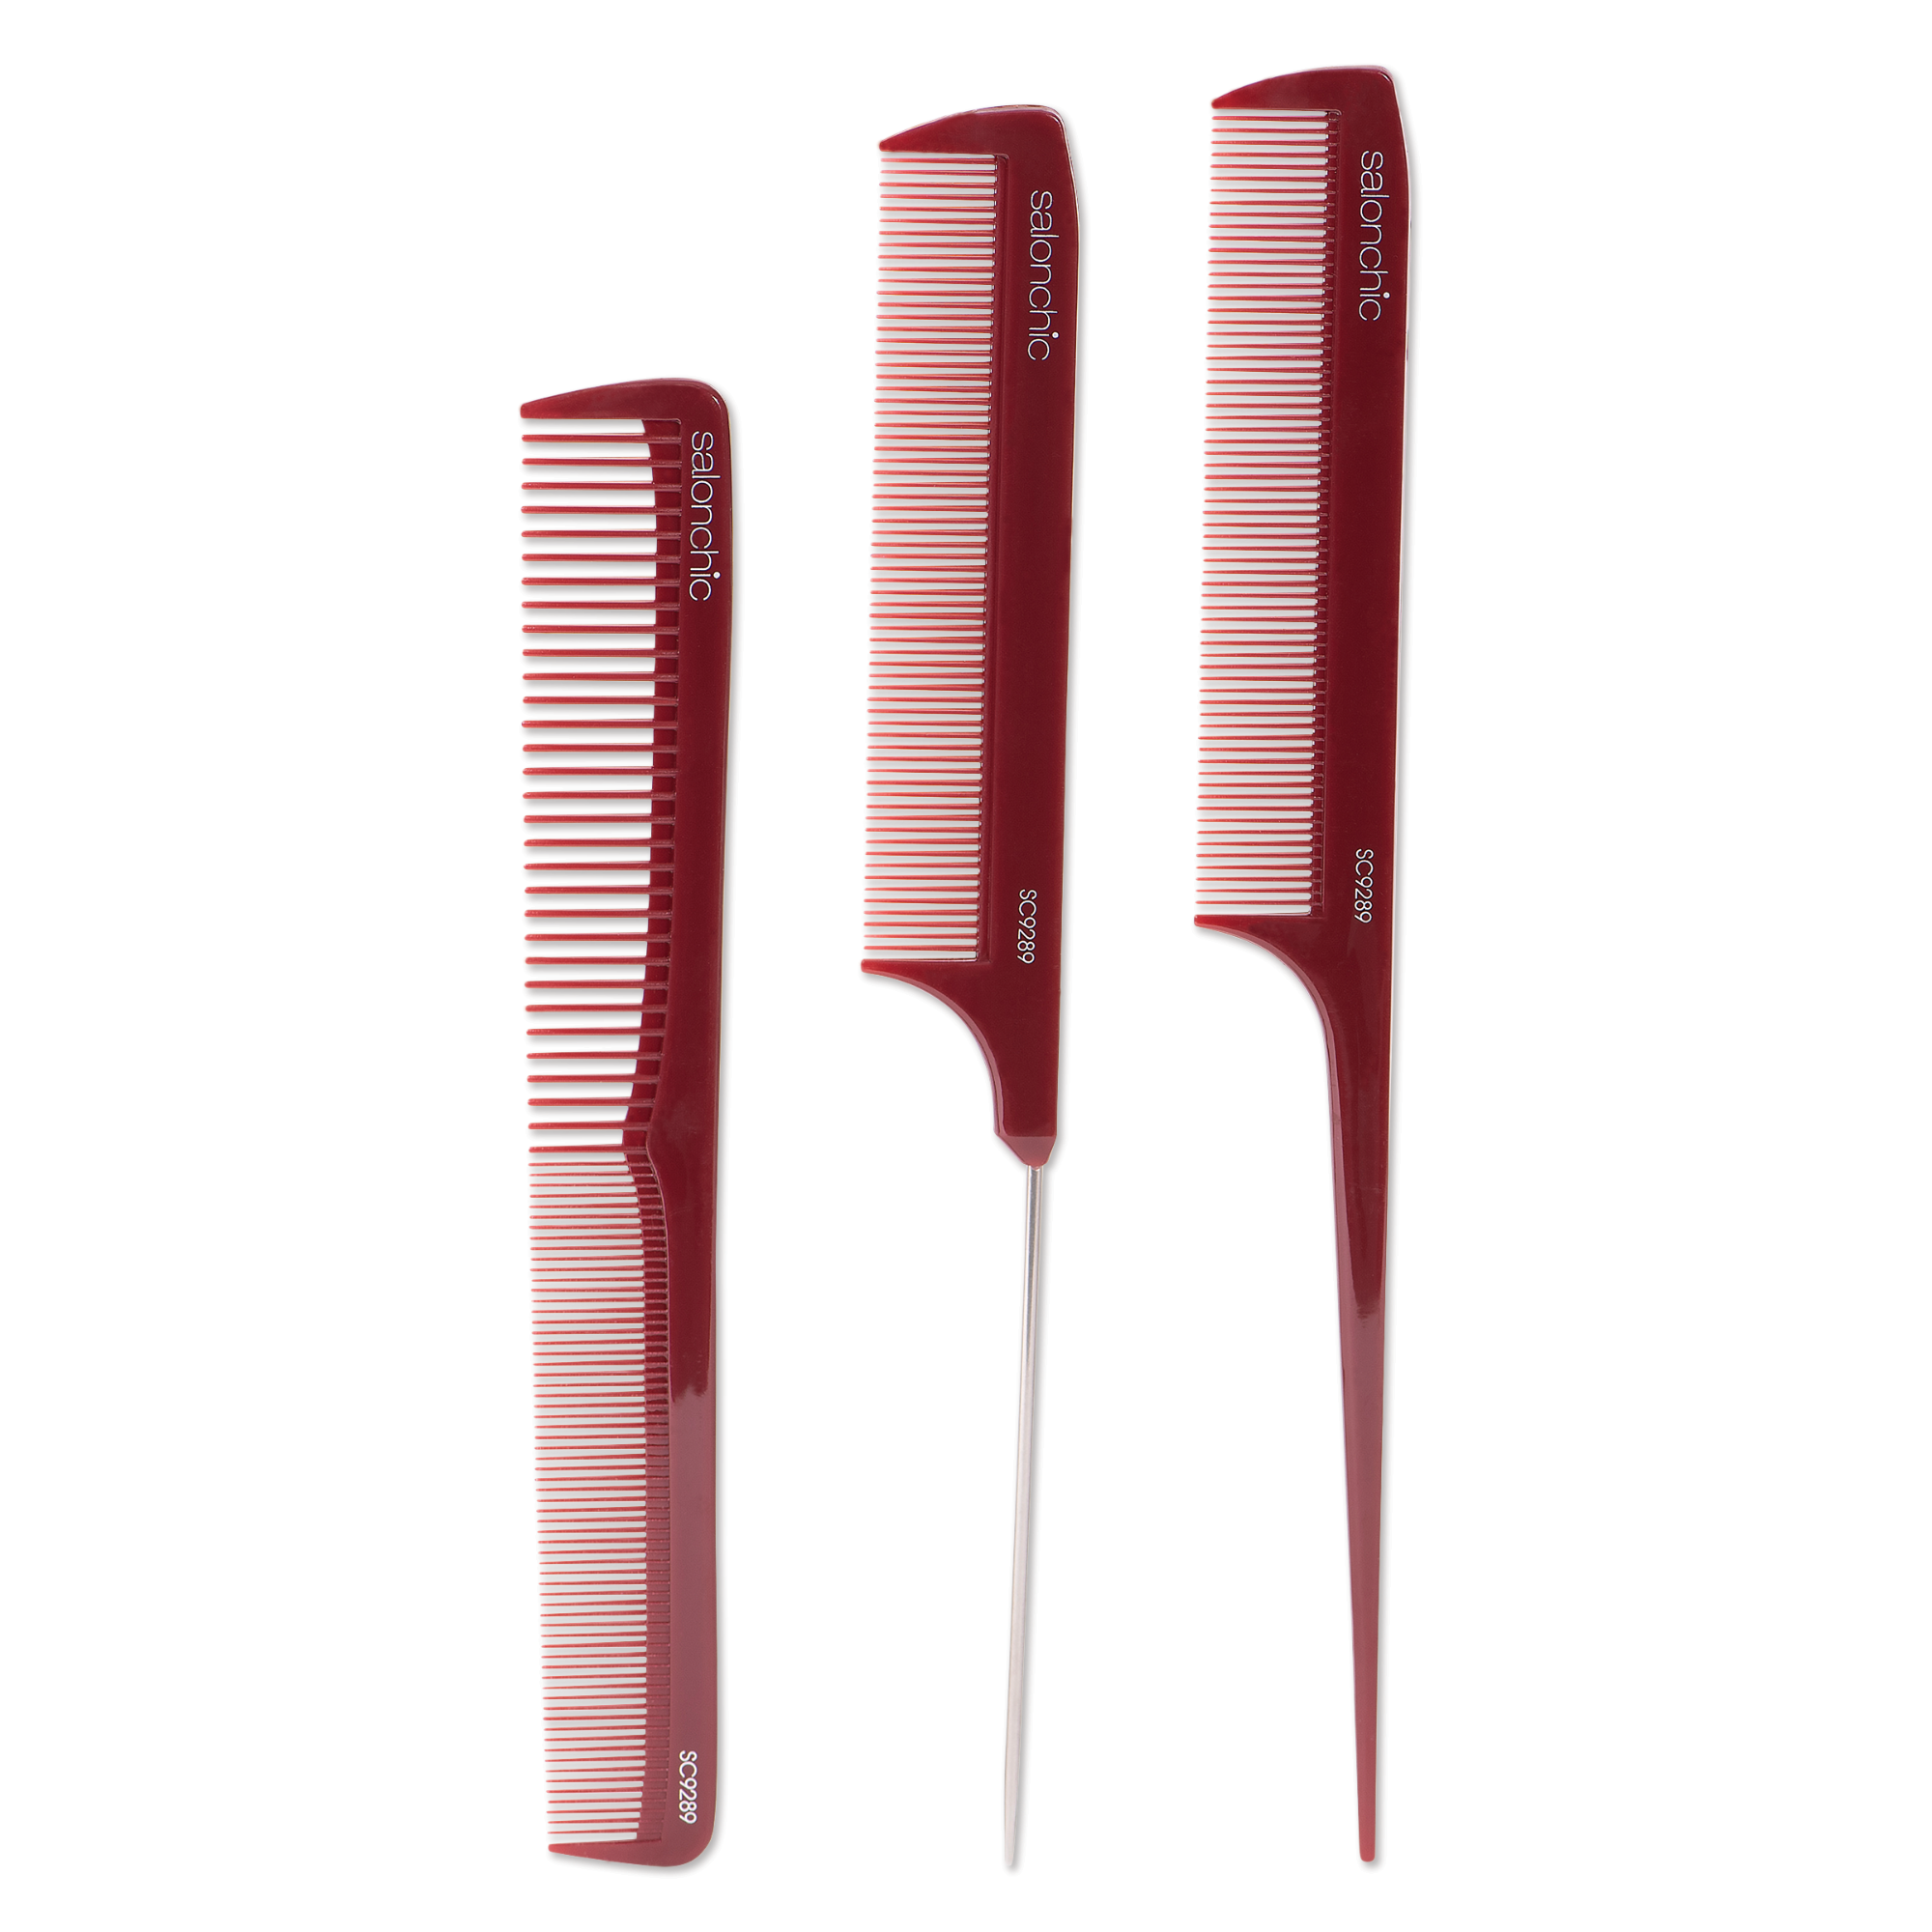 Comb Set